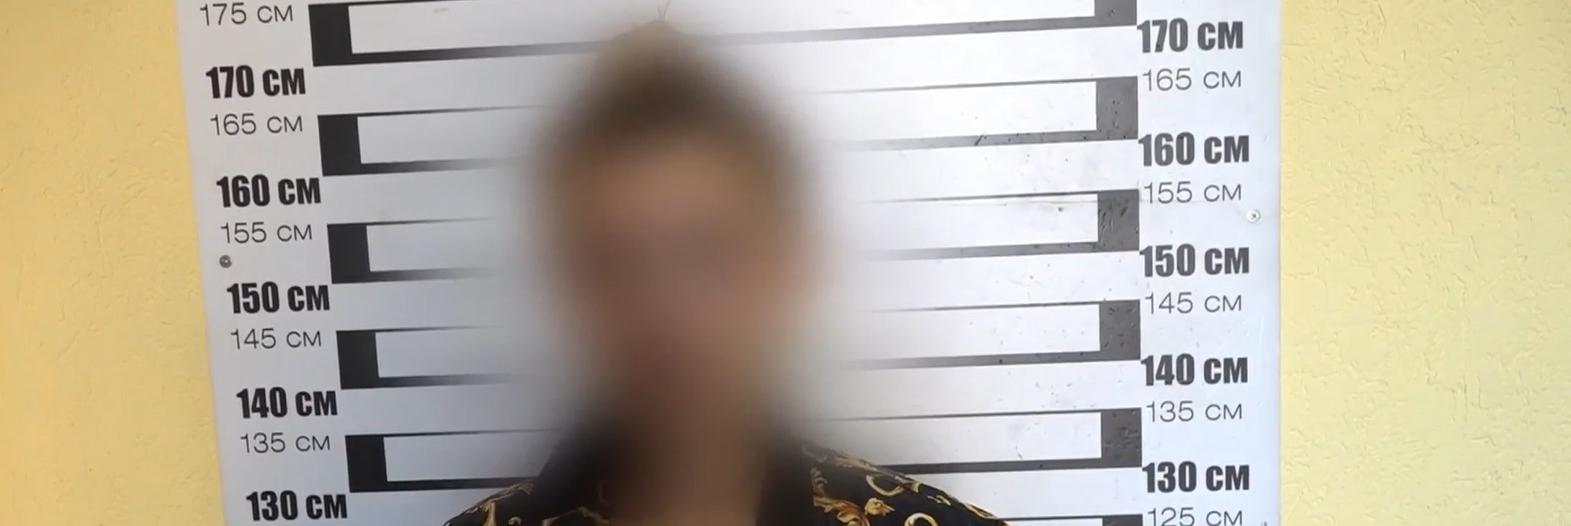 В Курске патрульные задержали девушку с наркотиками